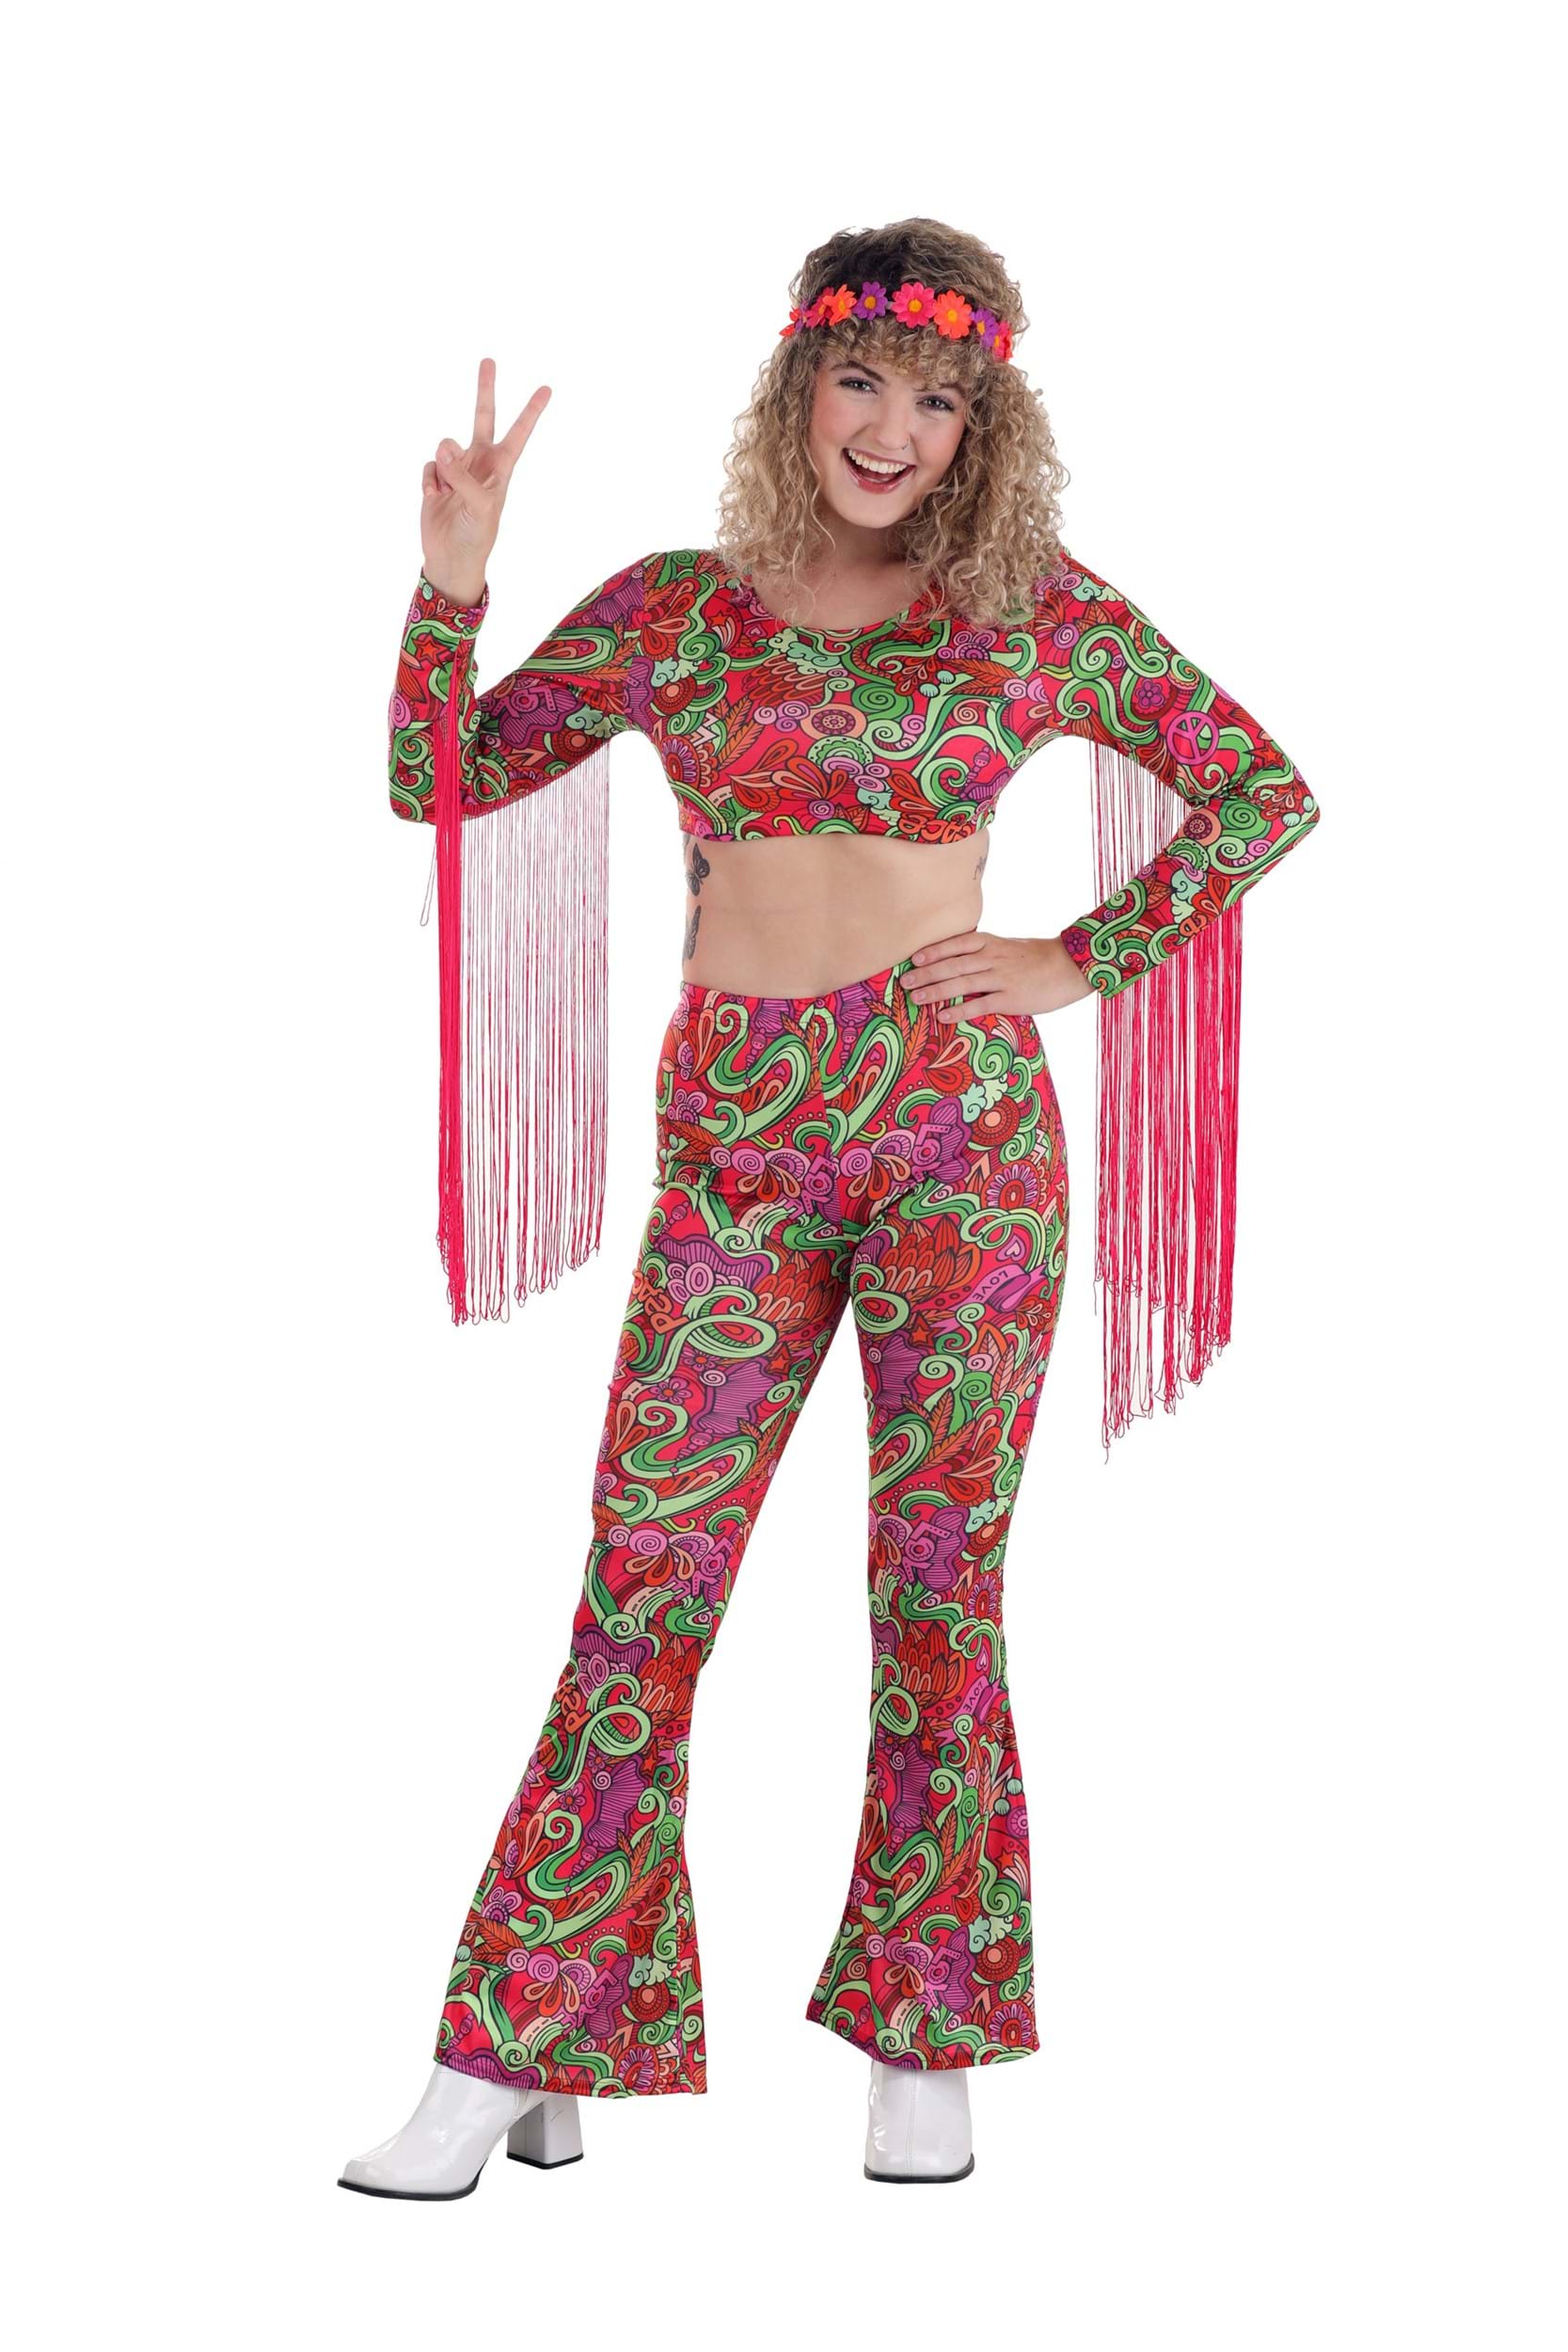 Hippies | Hippie costume, Hippie costume diy, Hippie halloween costumes diy